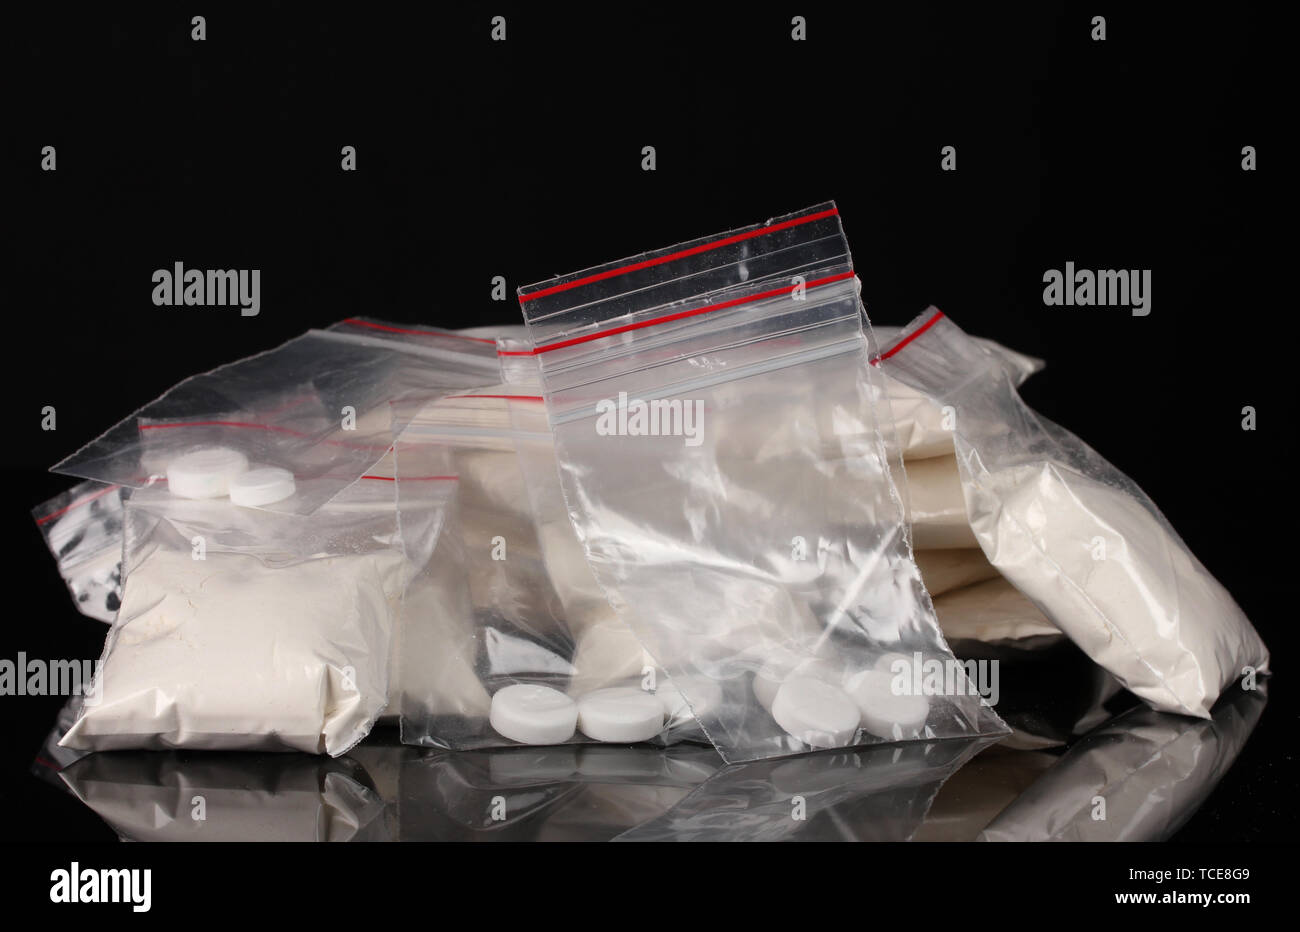 La cocaïne et les drogues dans des paquets sur fond noir Banque D'Images